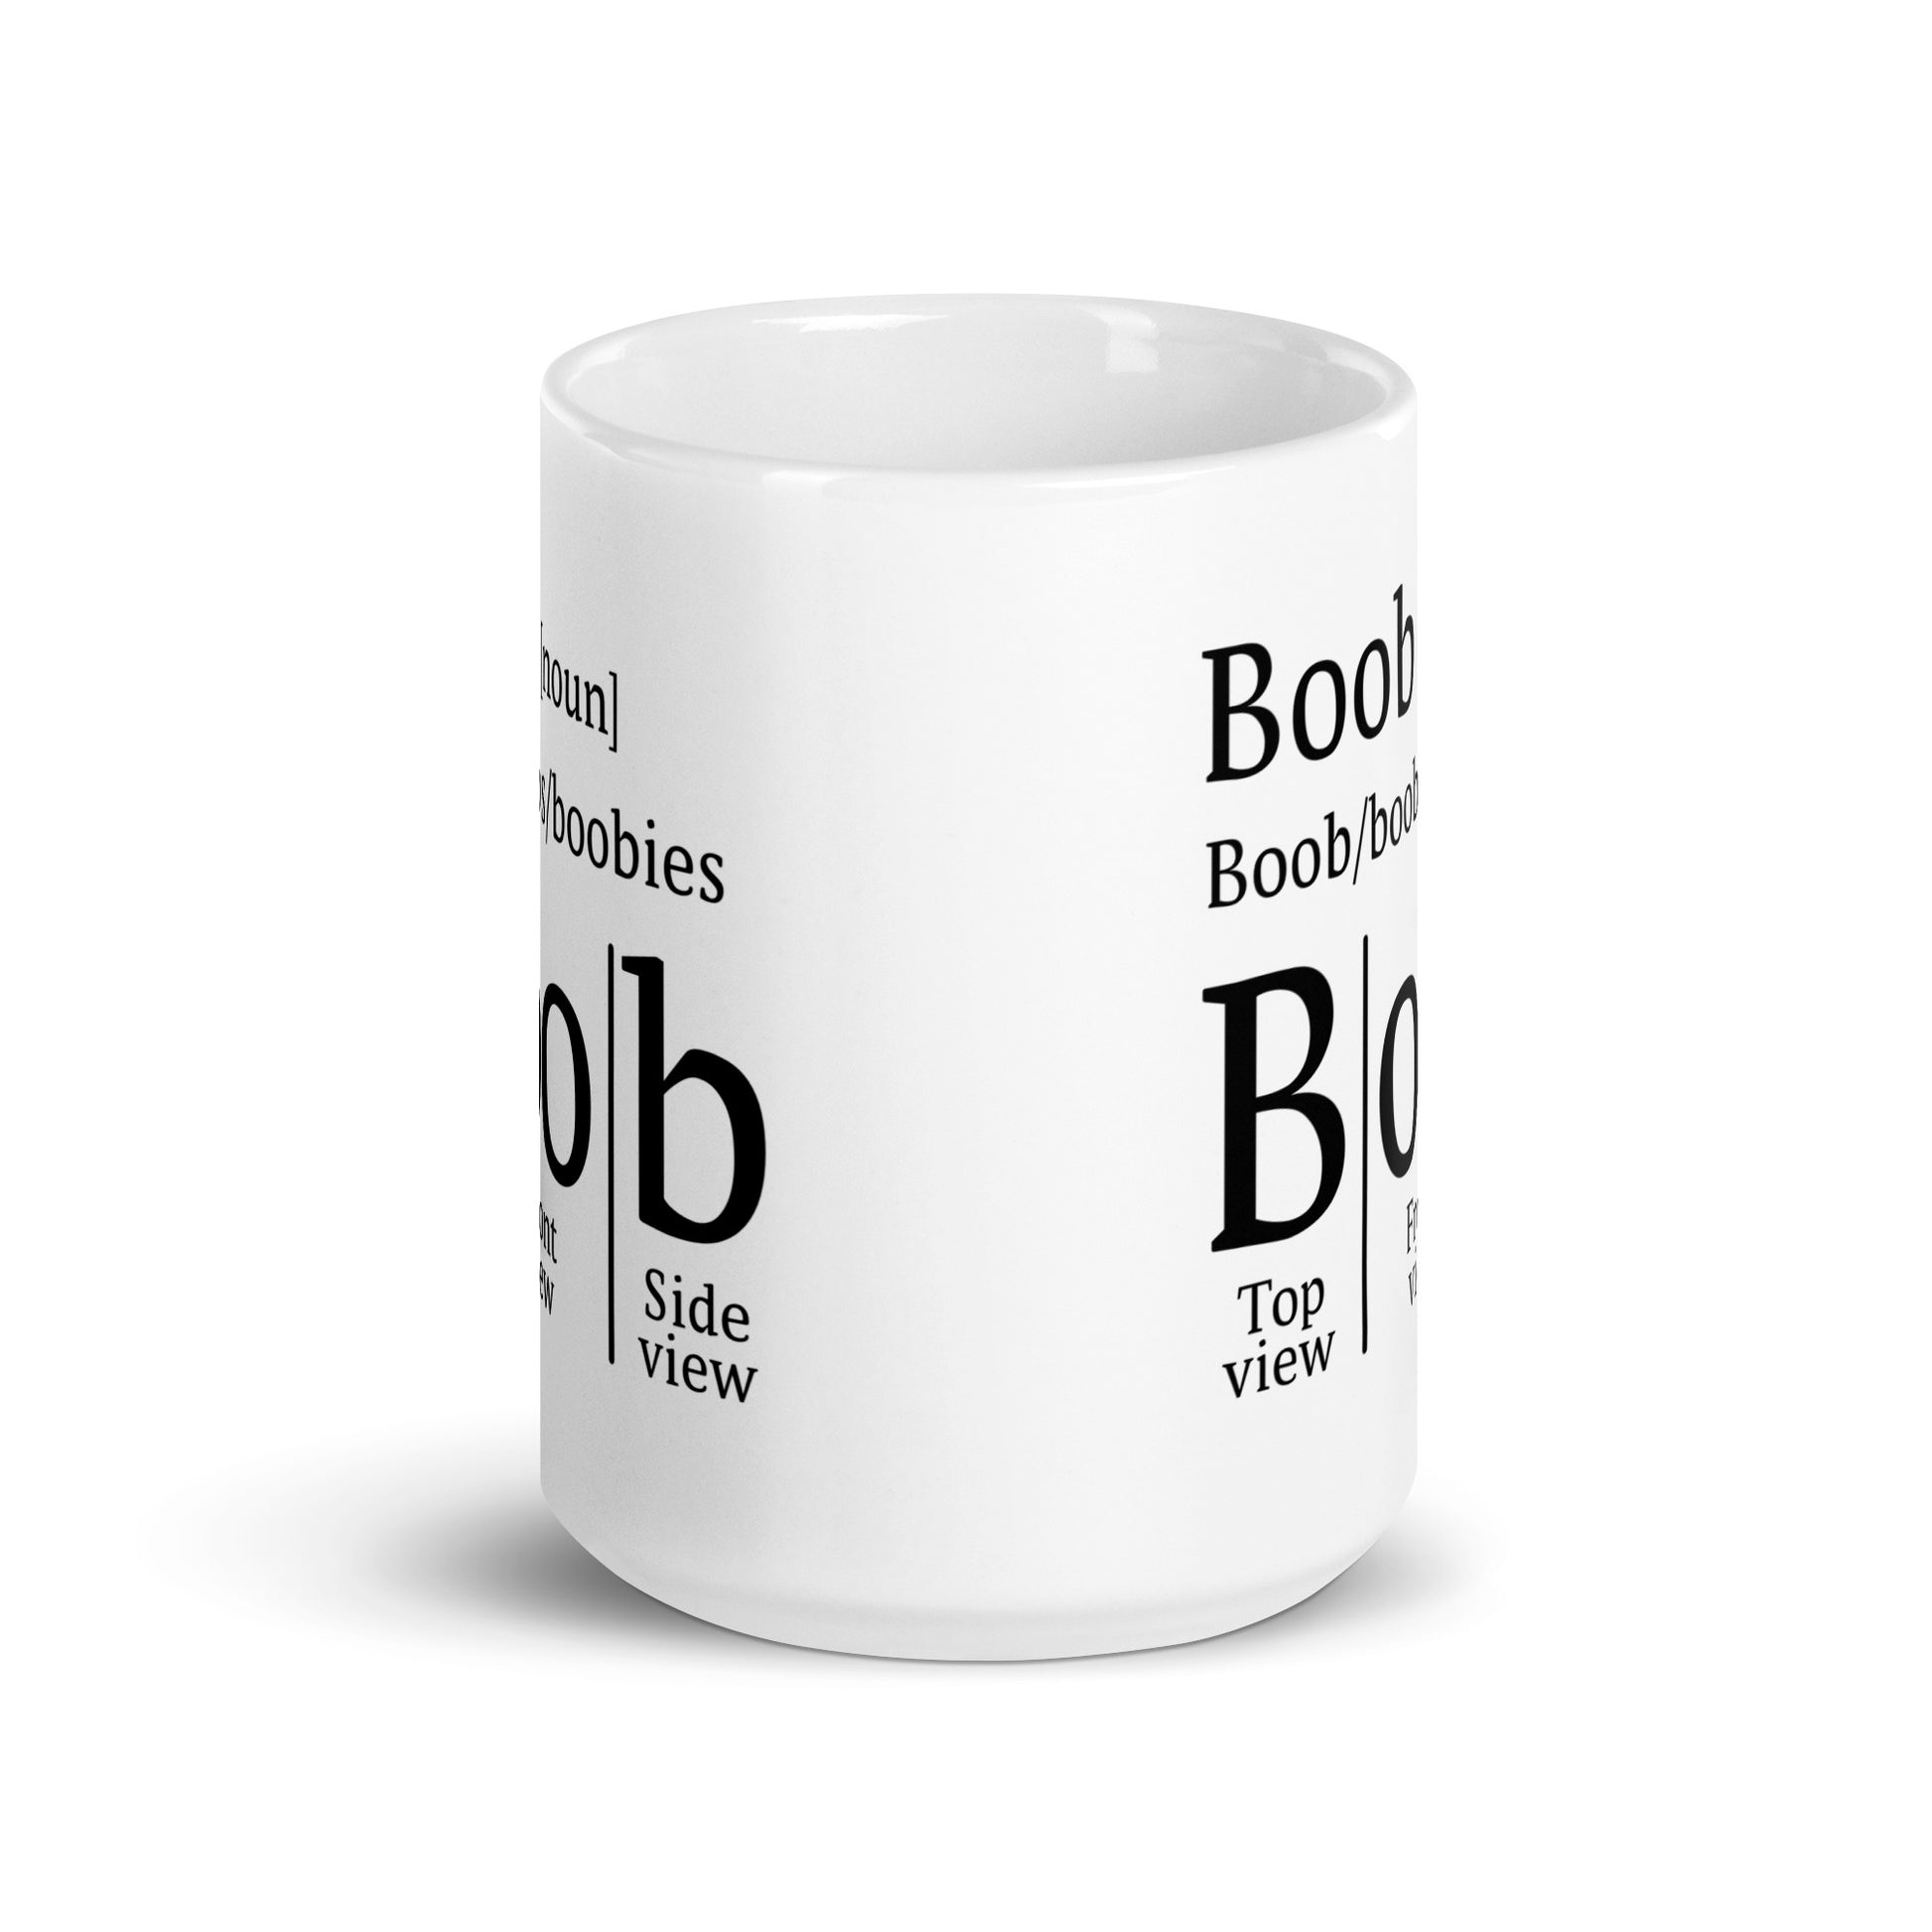 Boob Definition Mug